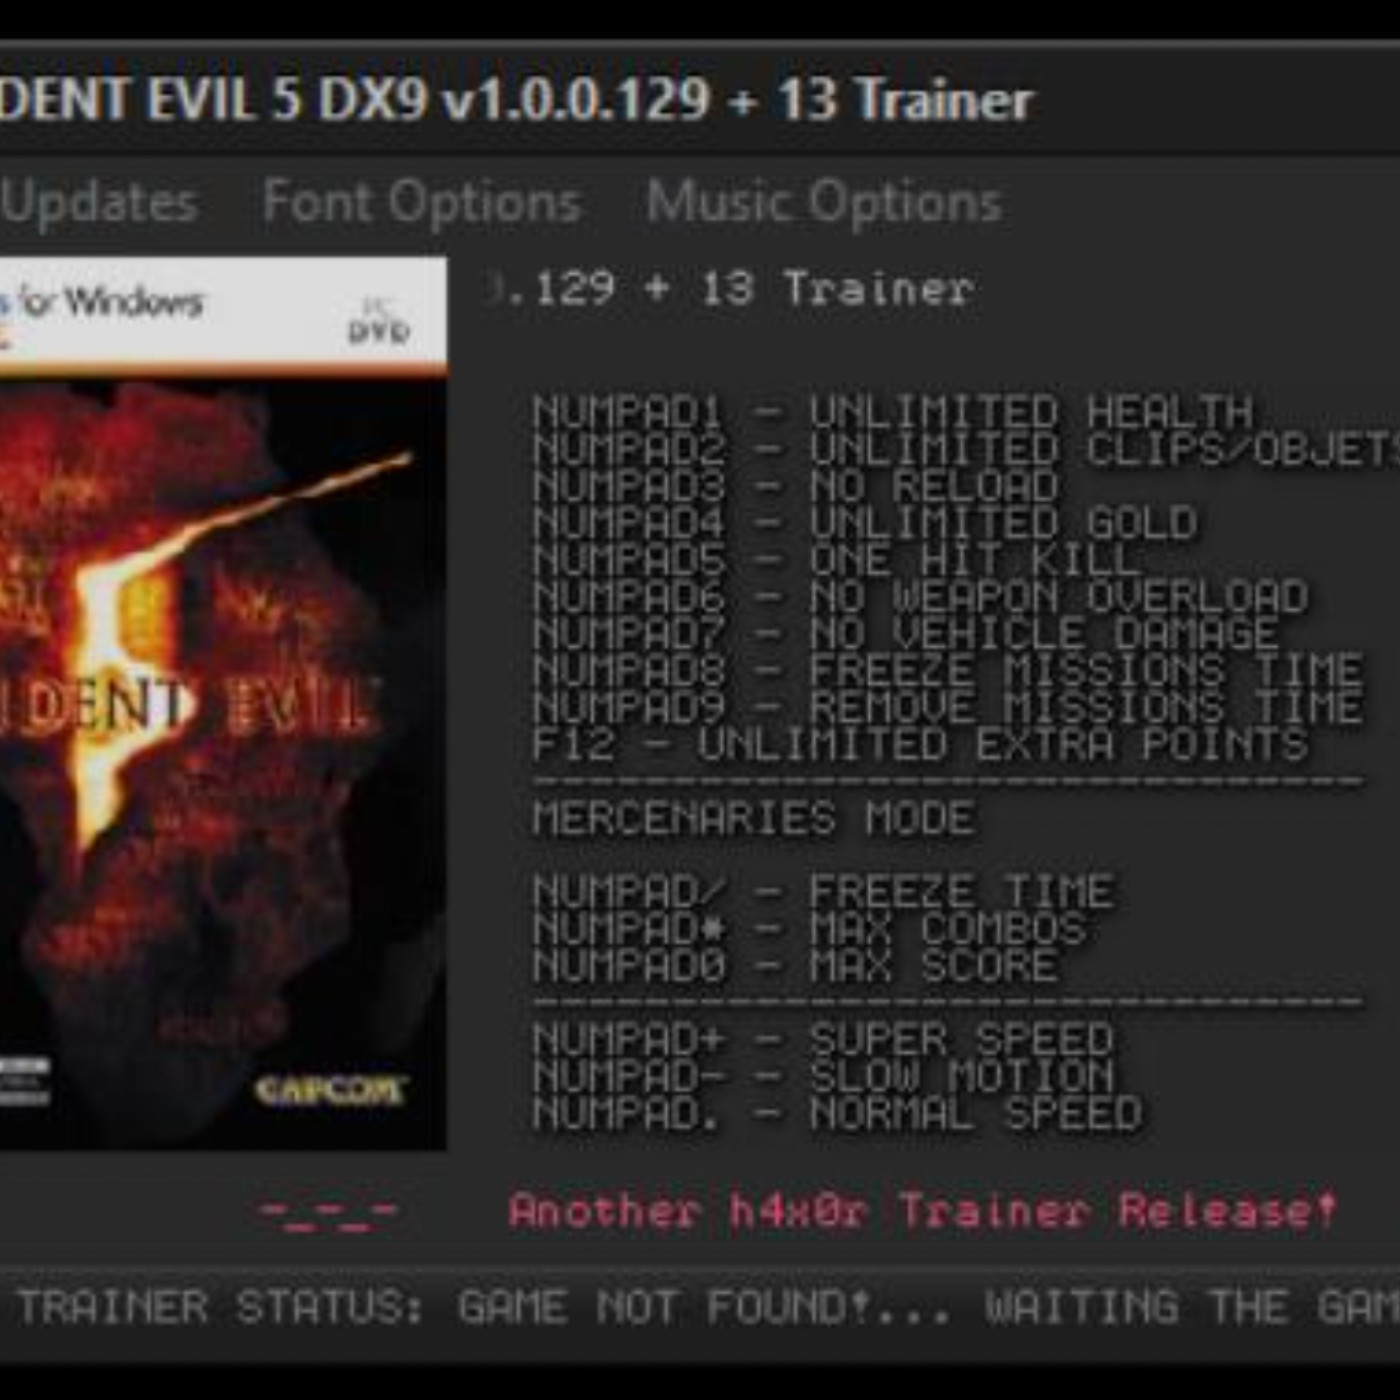 Como fazer download de Resident Evil 5 e os requisitos para PC